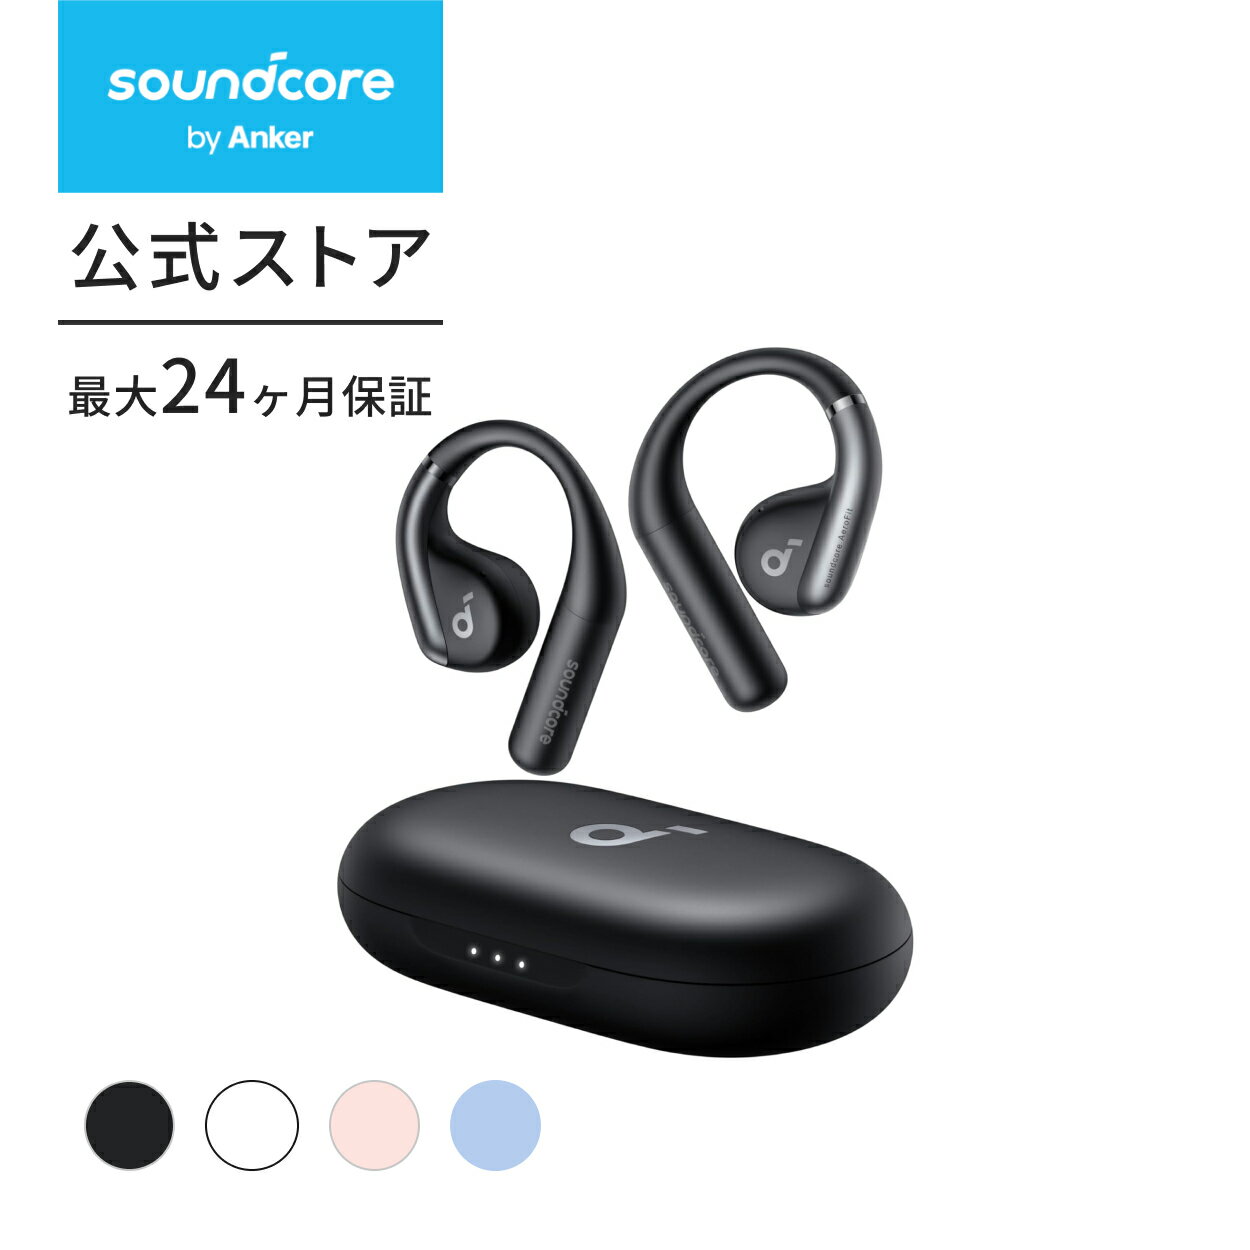 【2 000円OFFクーポン 6/11まで】【一部あす楽対応】Anker Soundcore AeroFit Bluetooth 5.3 【オープンイヤー型ワイヤレスイヤホン / IPX7防水規格/ 最大42時間再生 / マルチポイント接続/PSE…